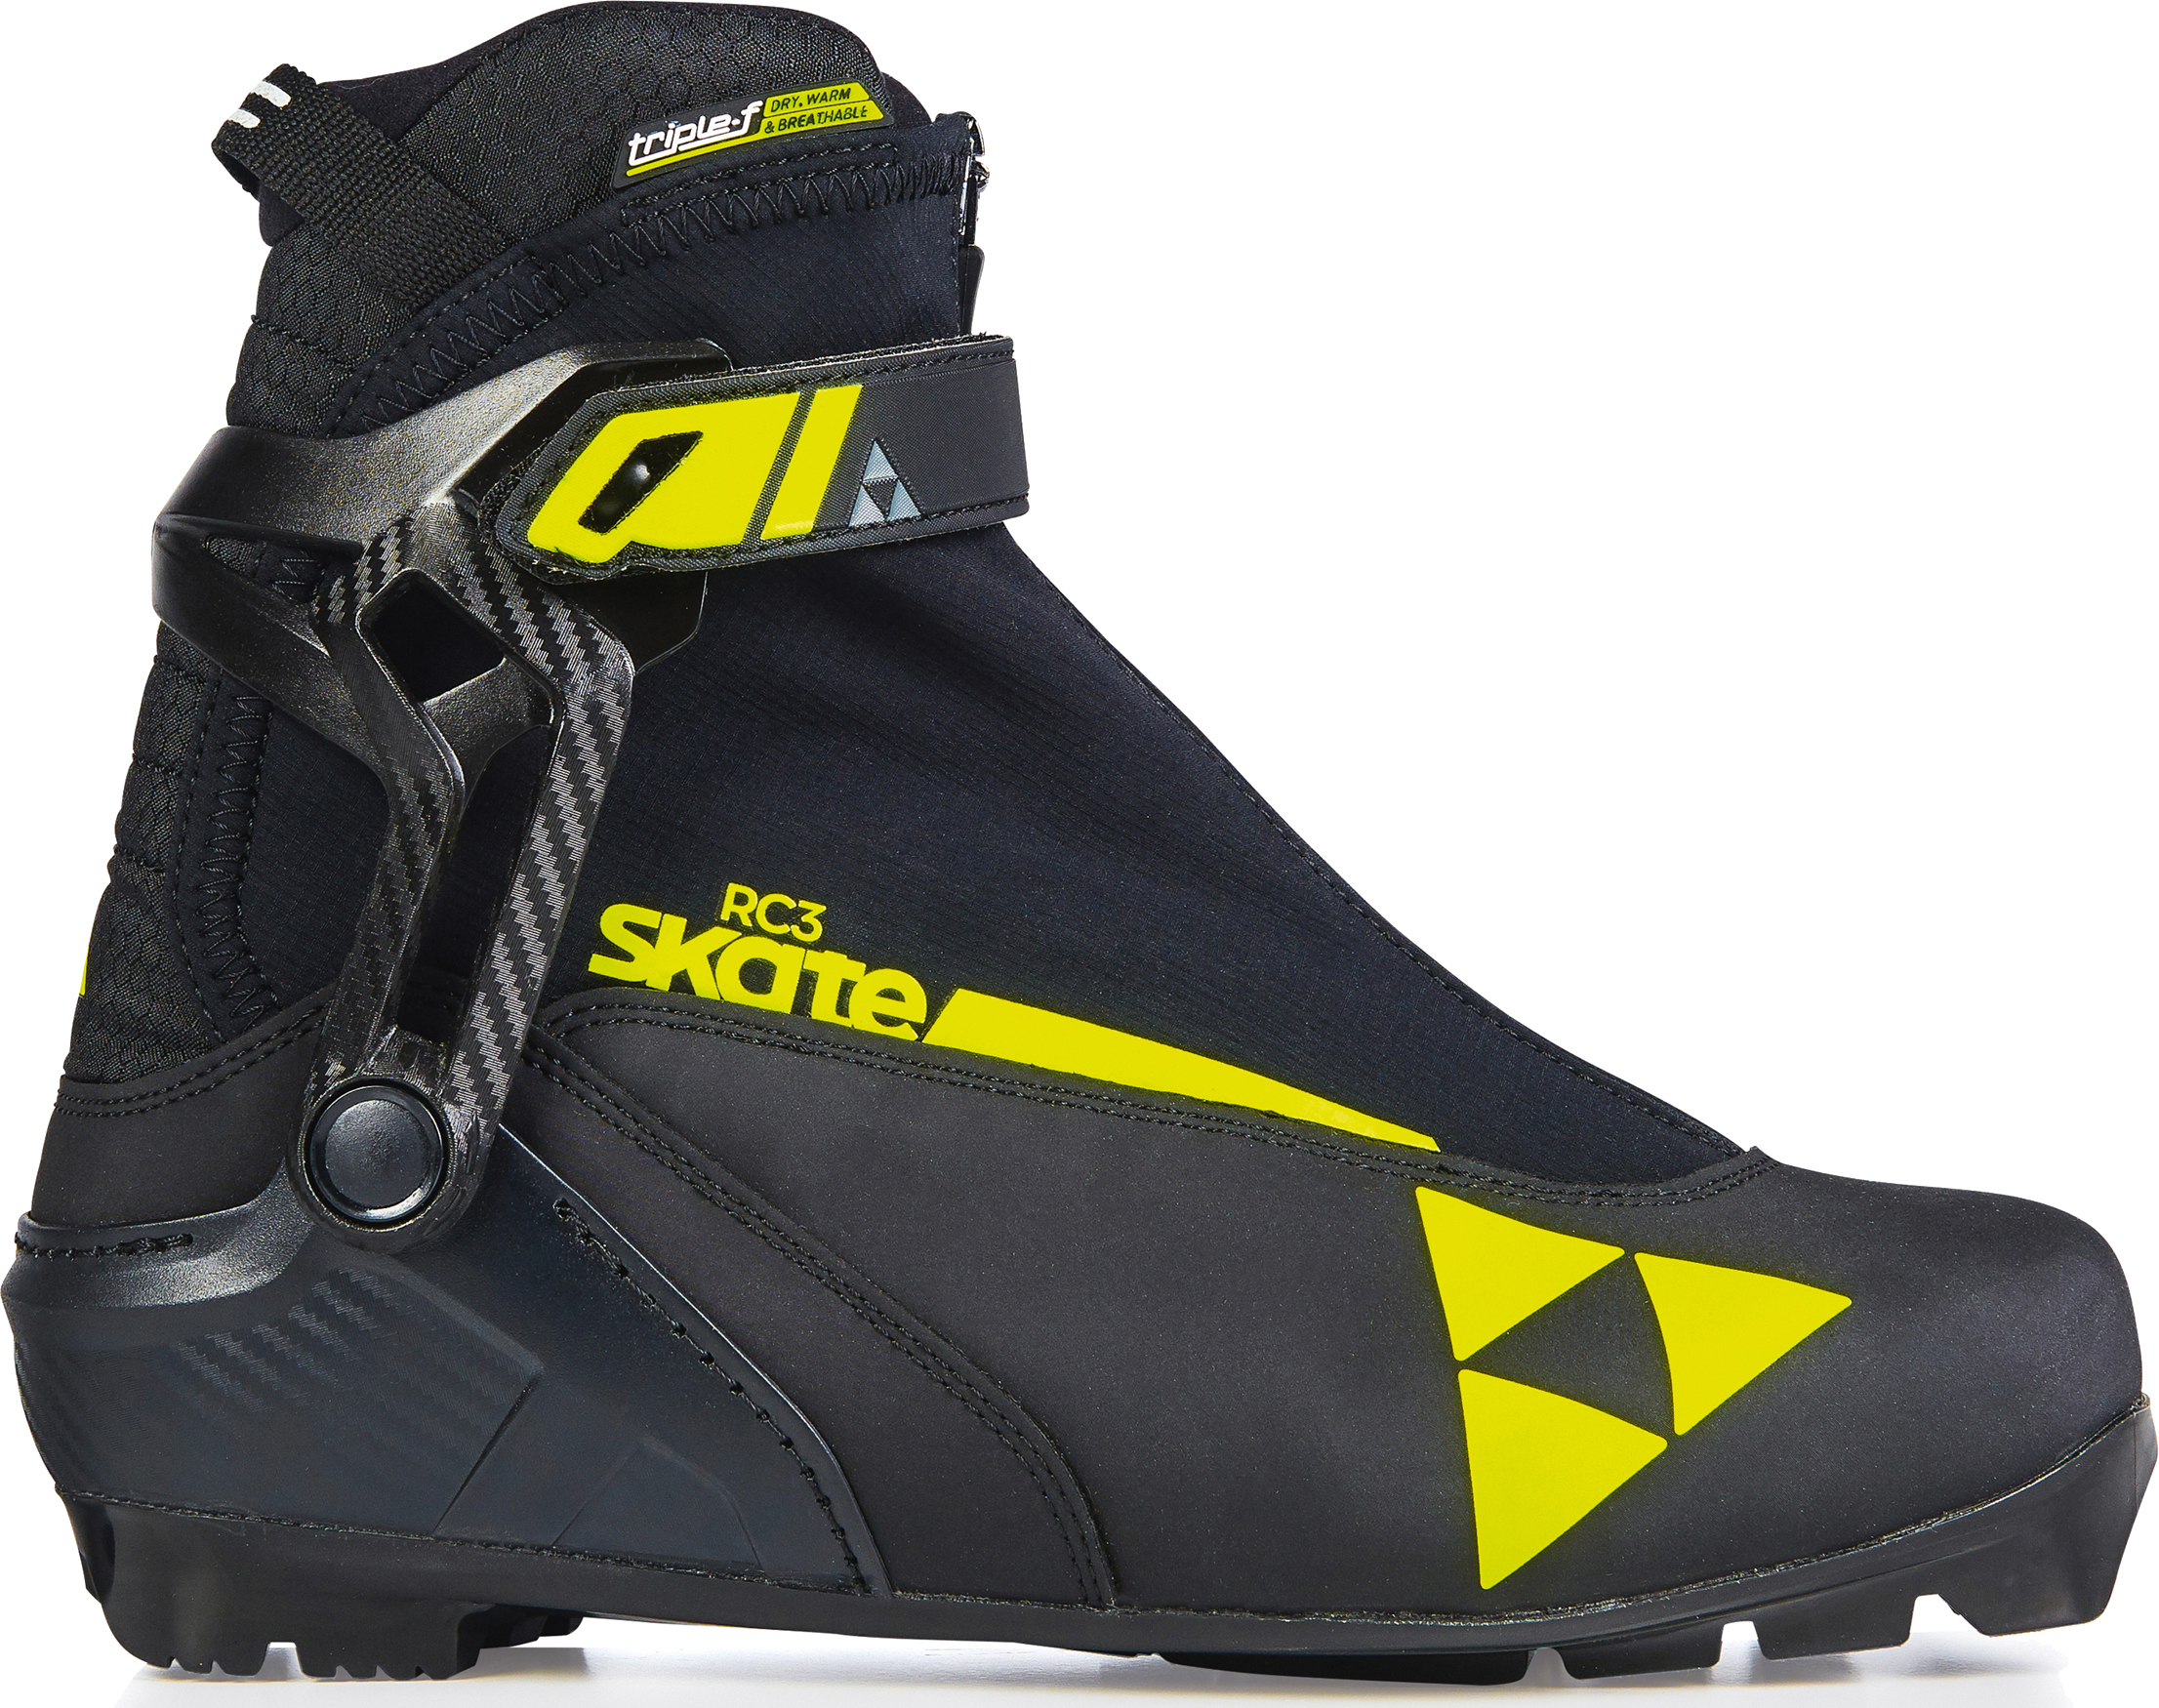 Лыжные ботинки Fischer RC3 Skate 42 2021/22